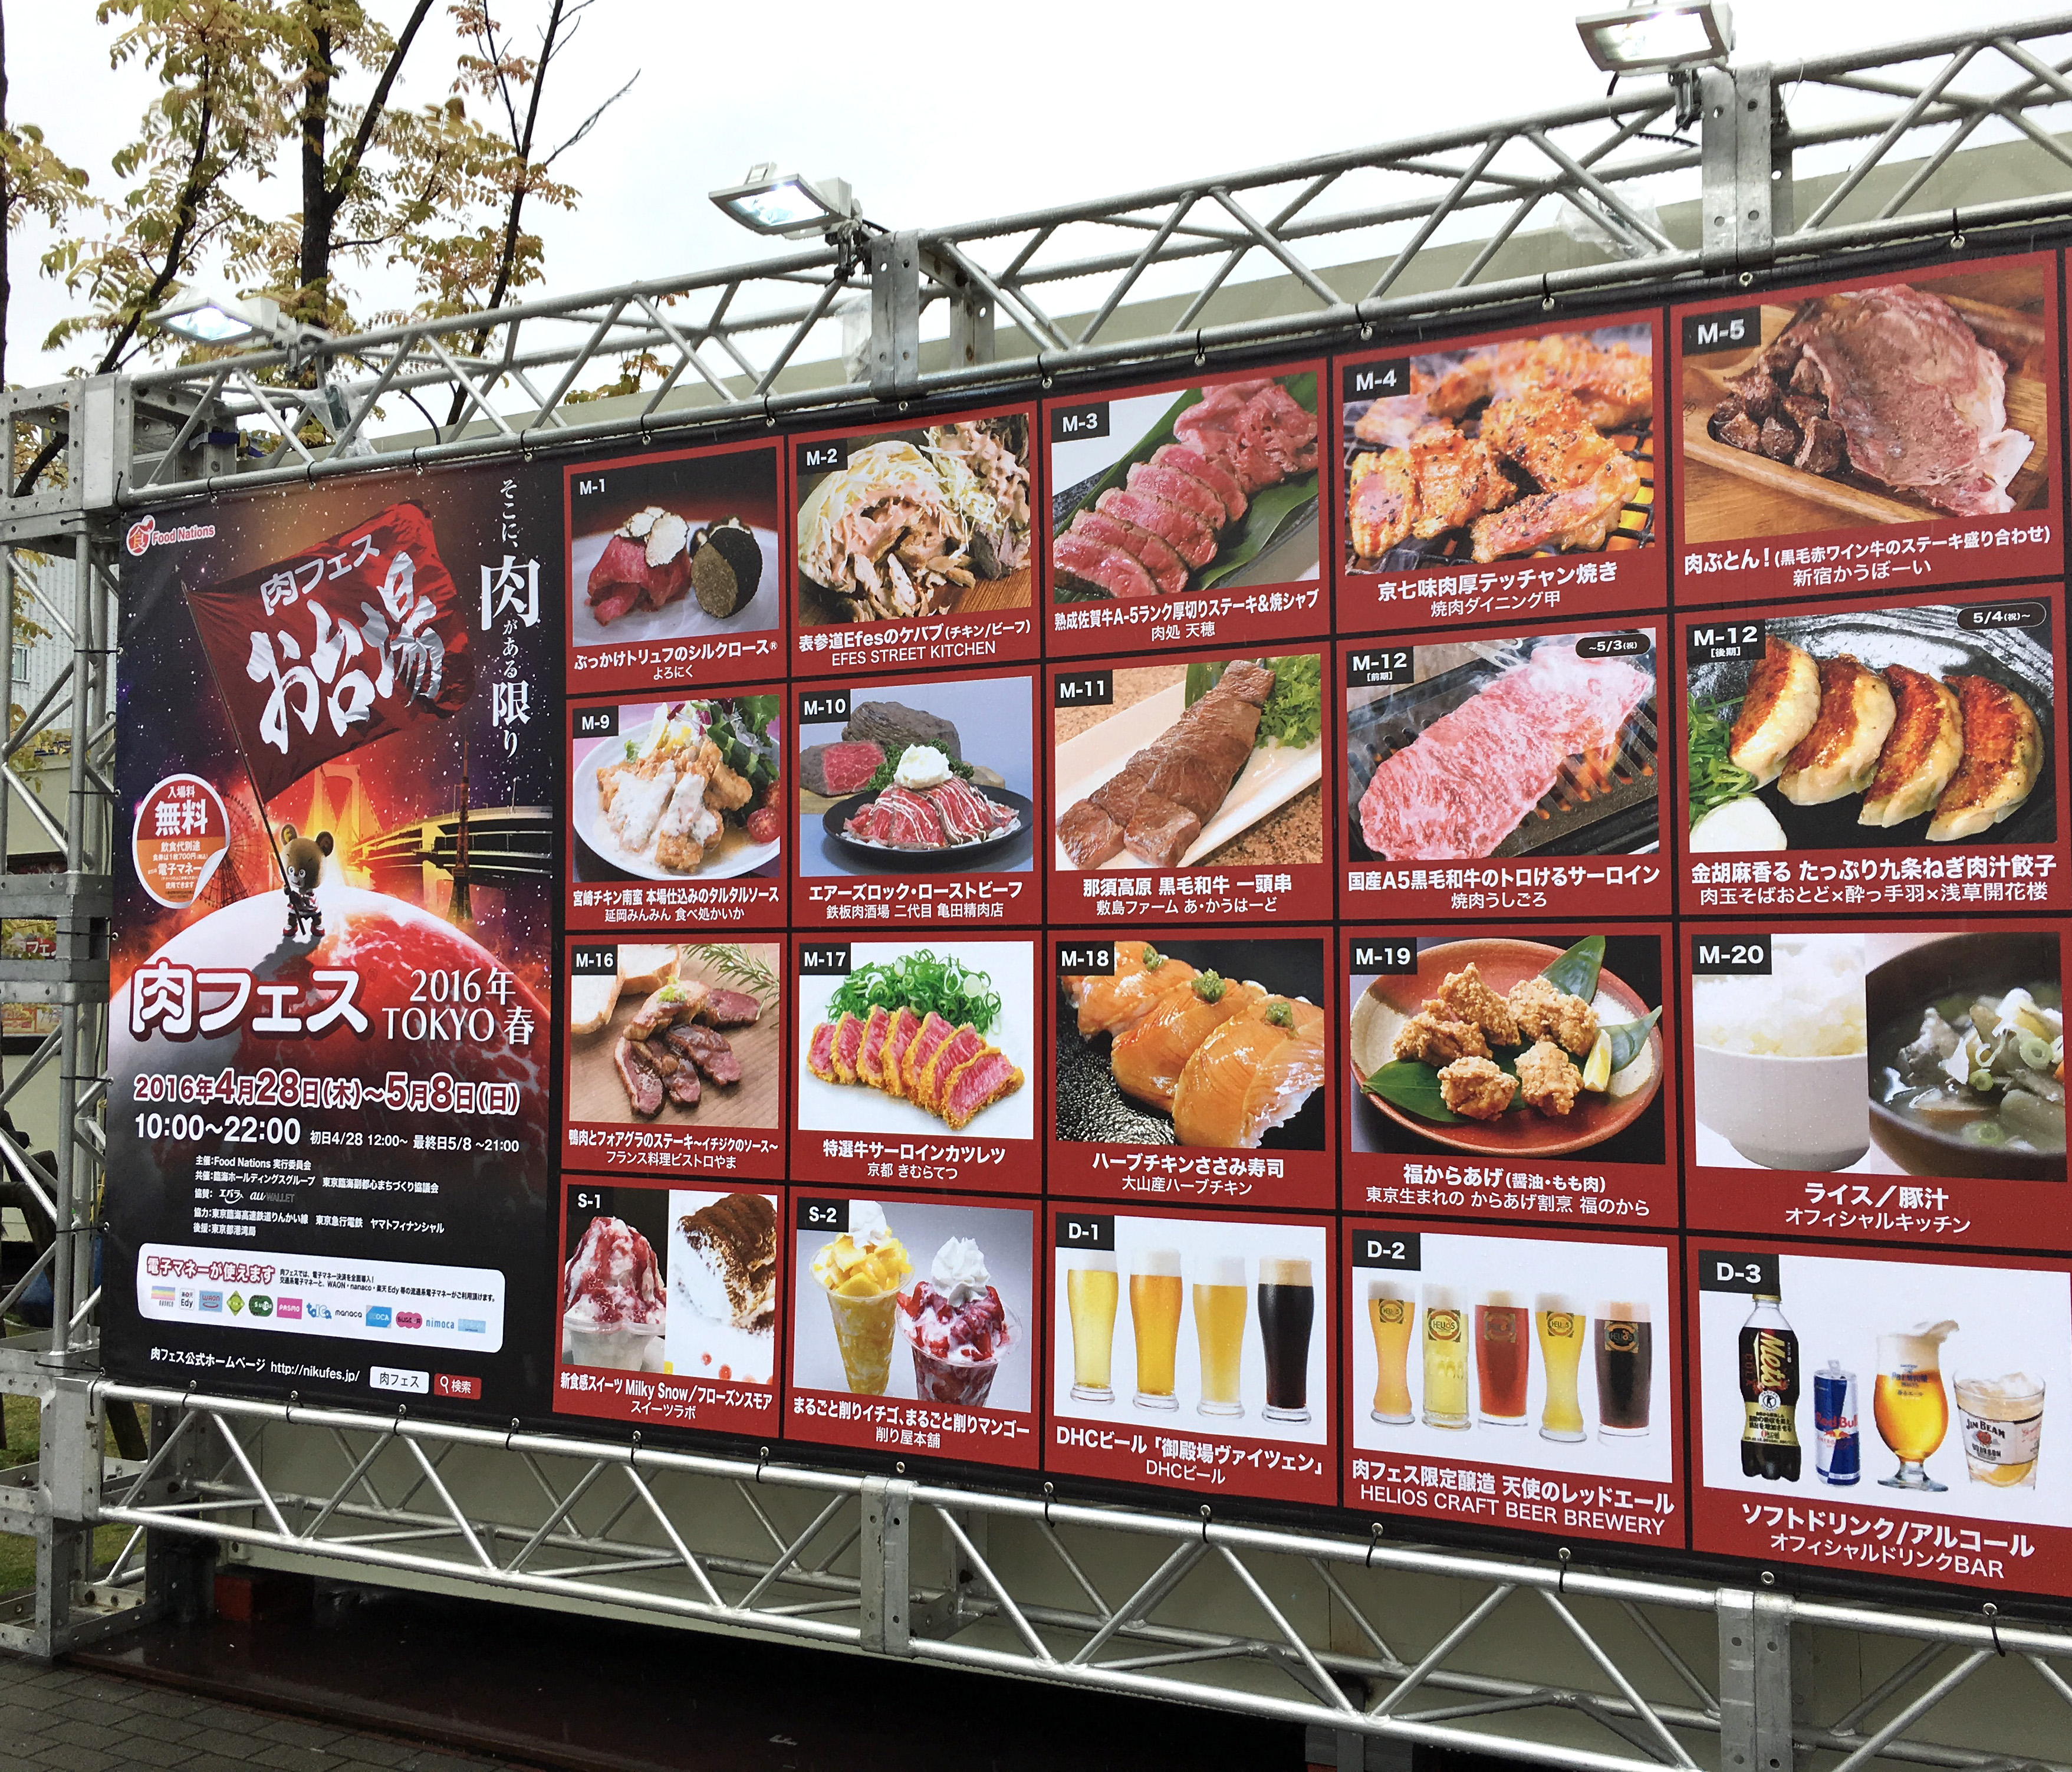 肉好き注目 肉フェス Tokyo 16春が開幕 お台場会場に行ってみた ミート率100 バーガー は食っとくべき ロケットニュース24